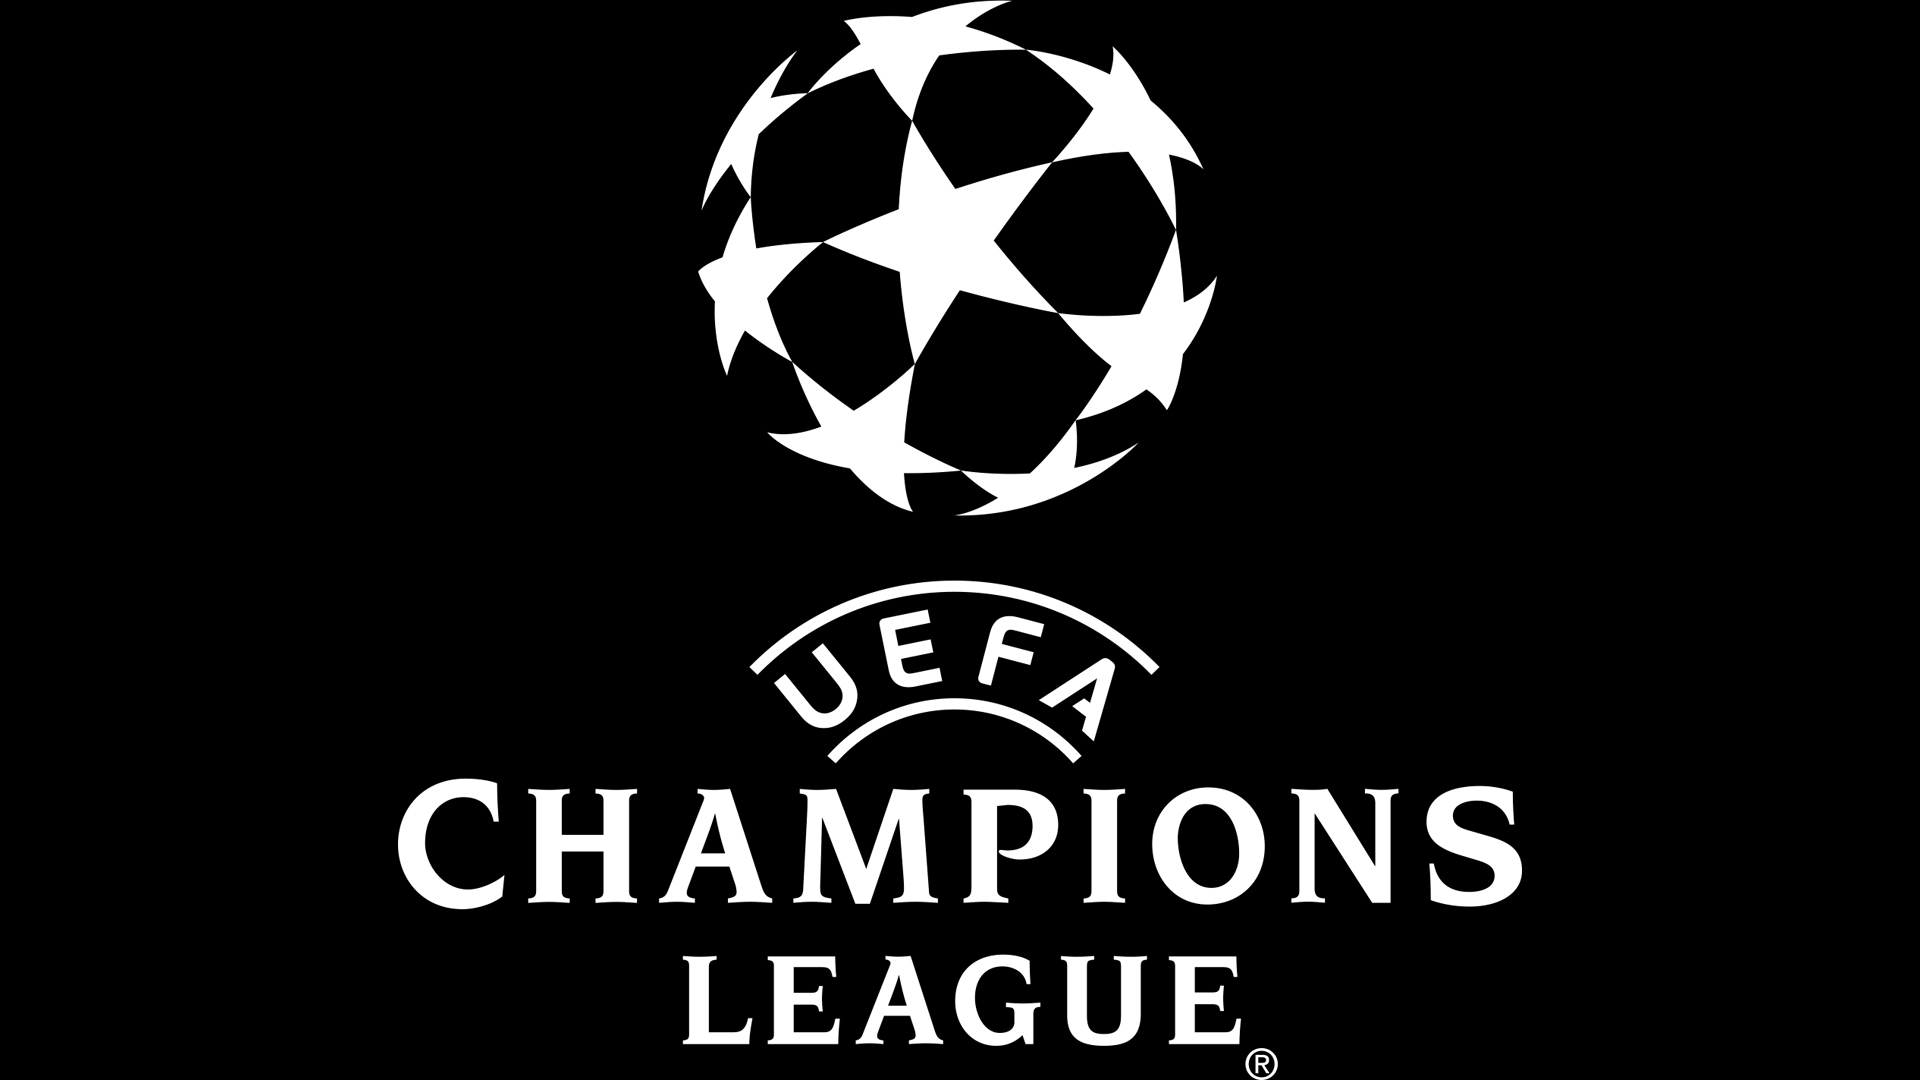 uefa champions league schedule 2020